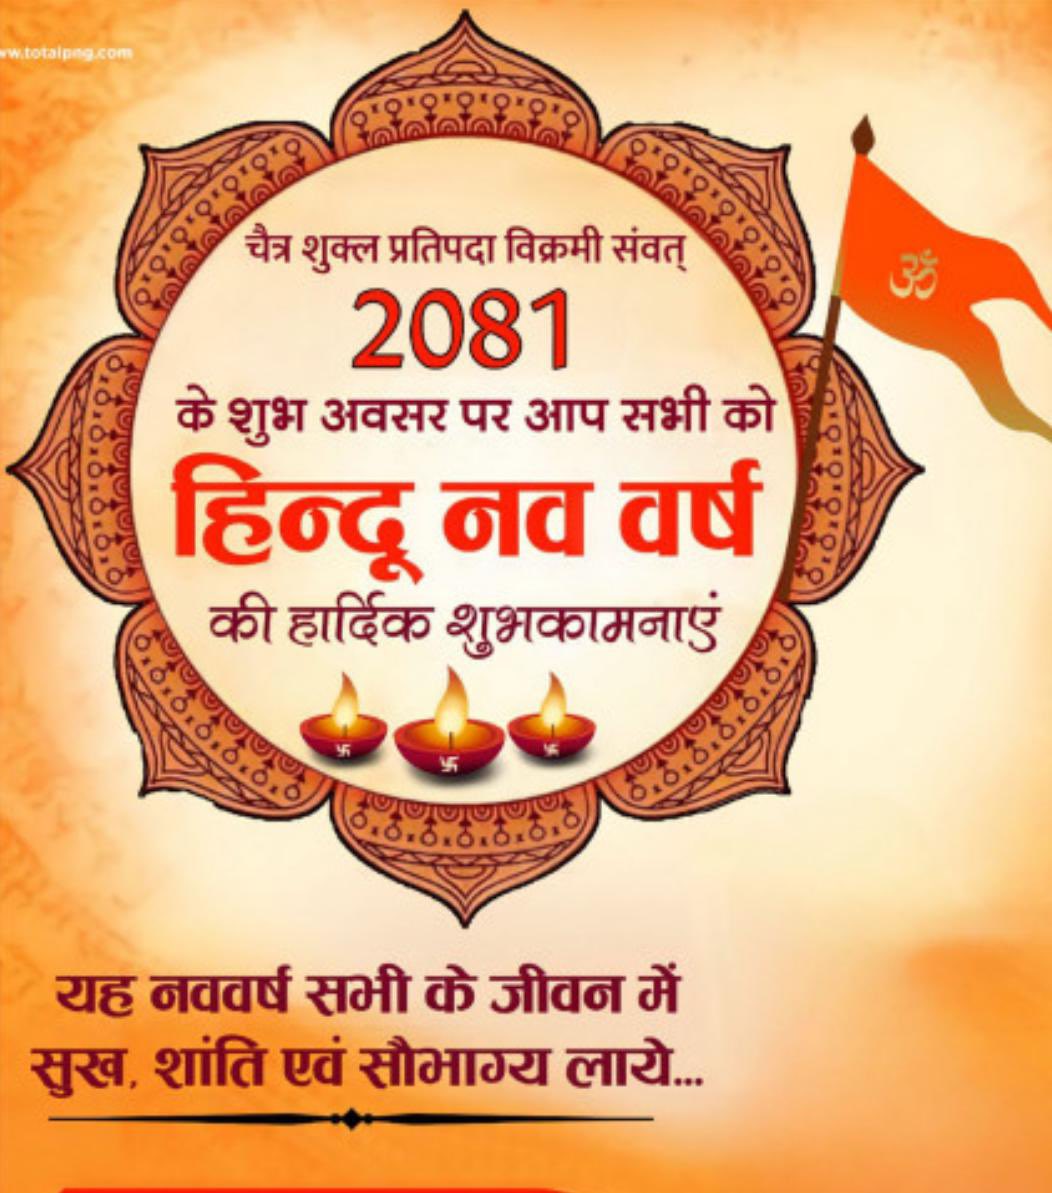 हमें अपनी संस्कृति पर गर्व है। 
#HinduNavVarsh2081 
#PhirEkBaarModiSarkaar 
🌹जय श्री राम🌹